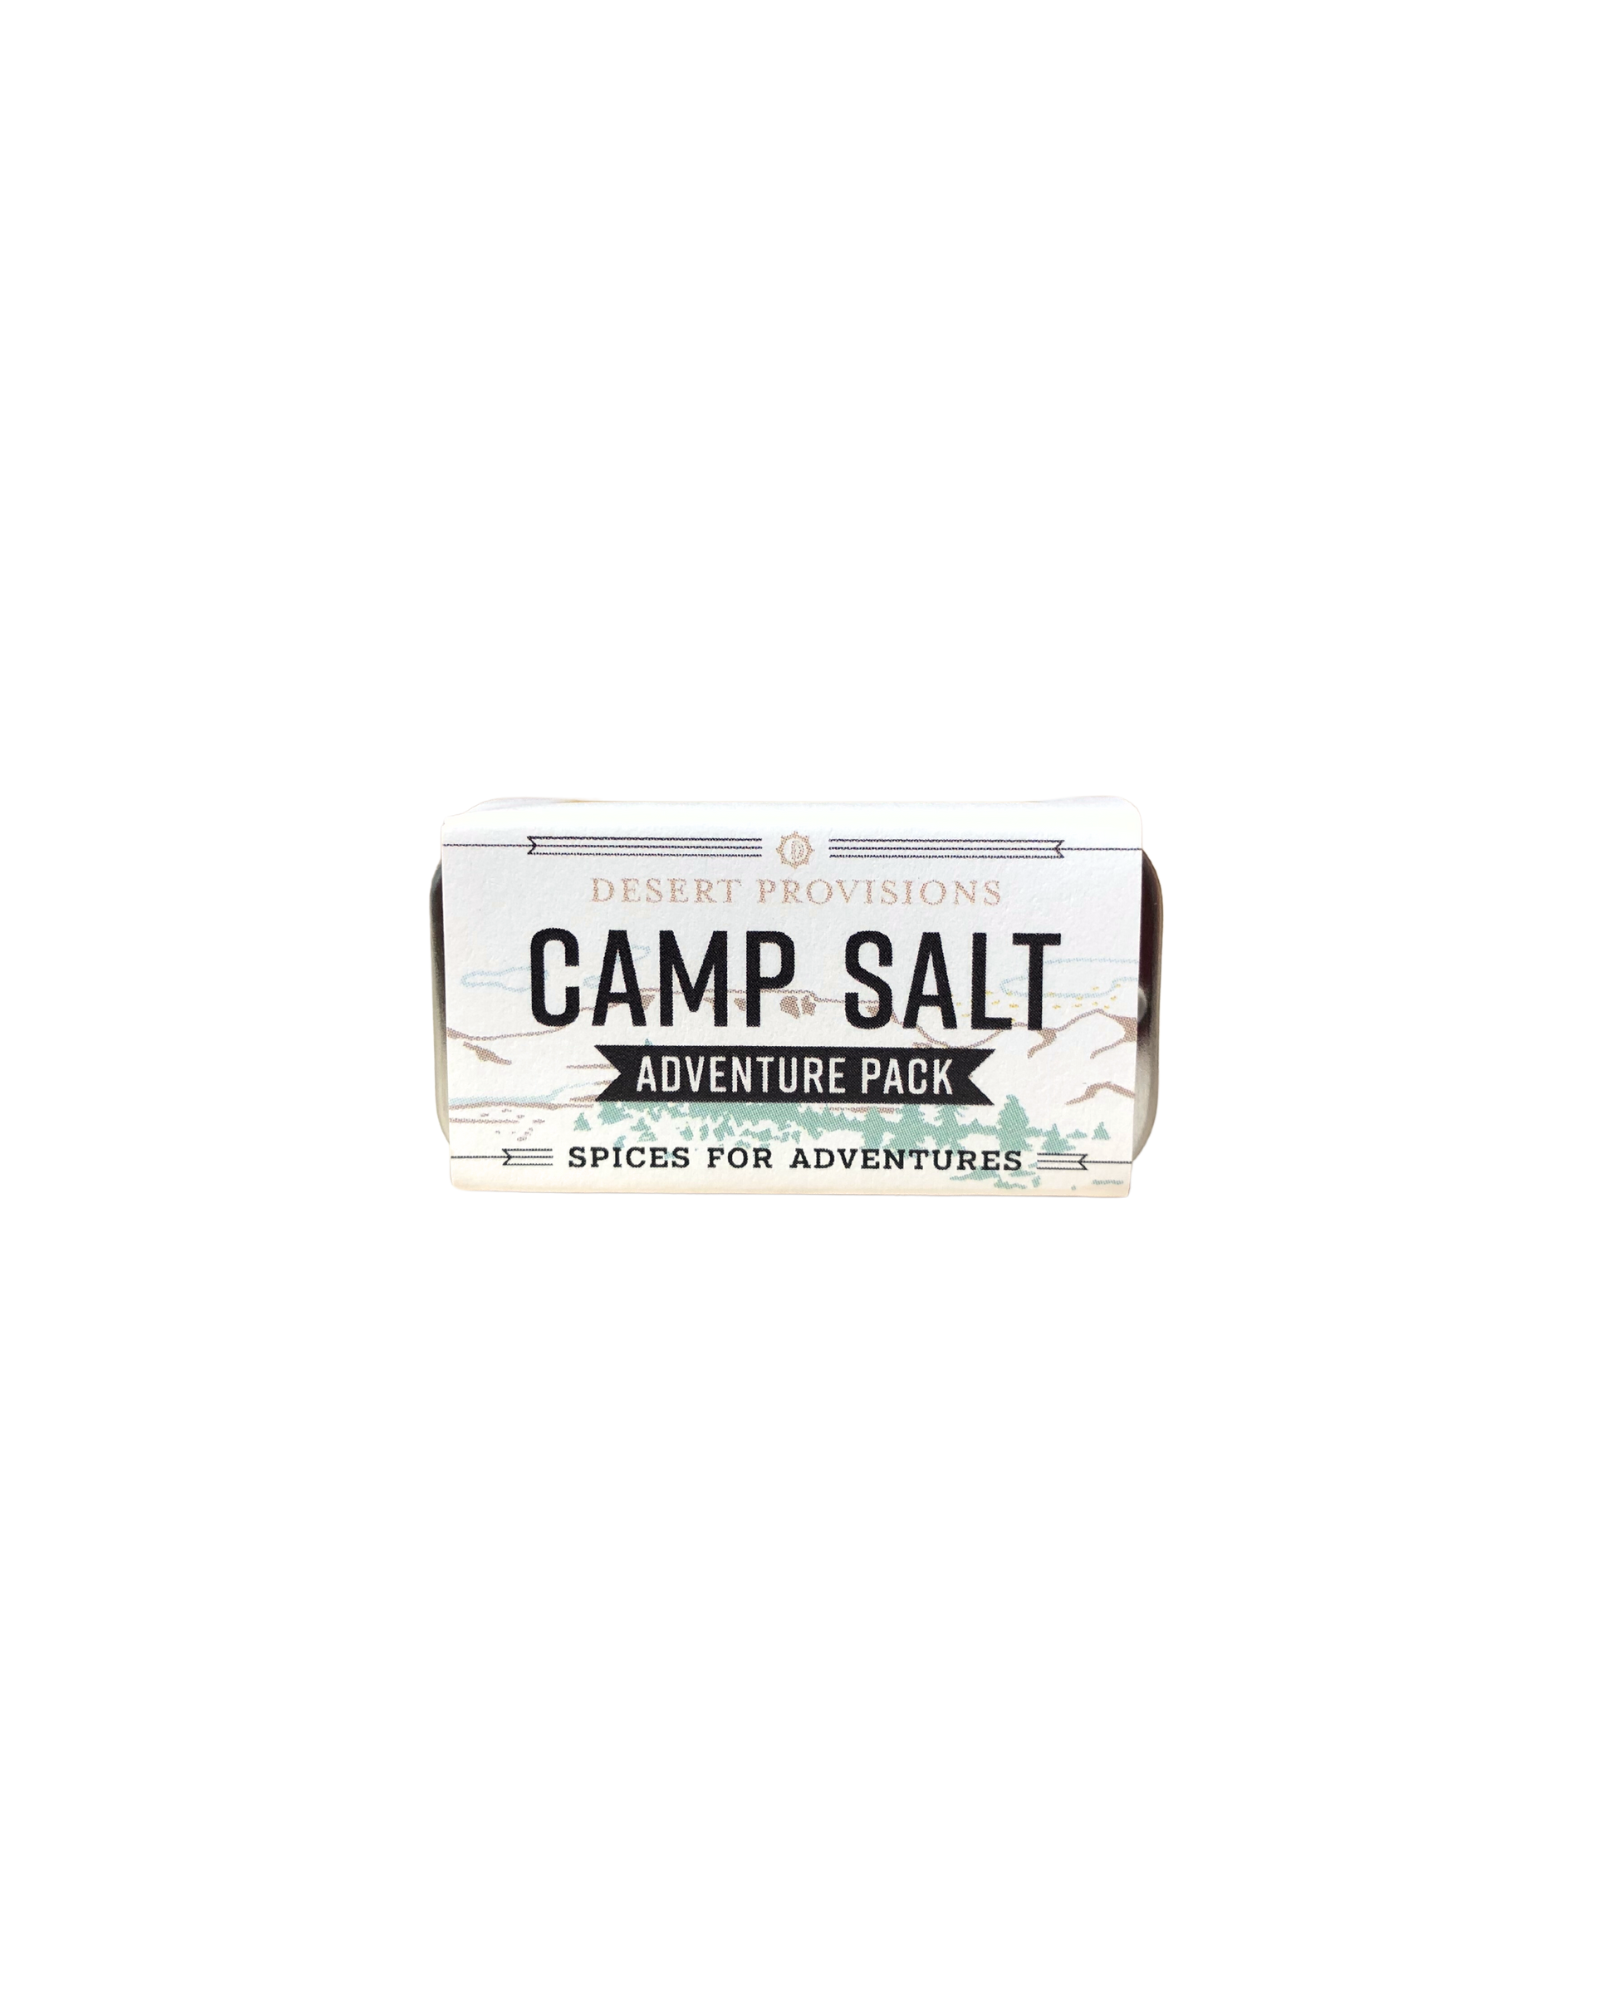 Camp salt adventure pack trio packaging